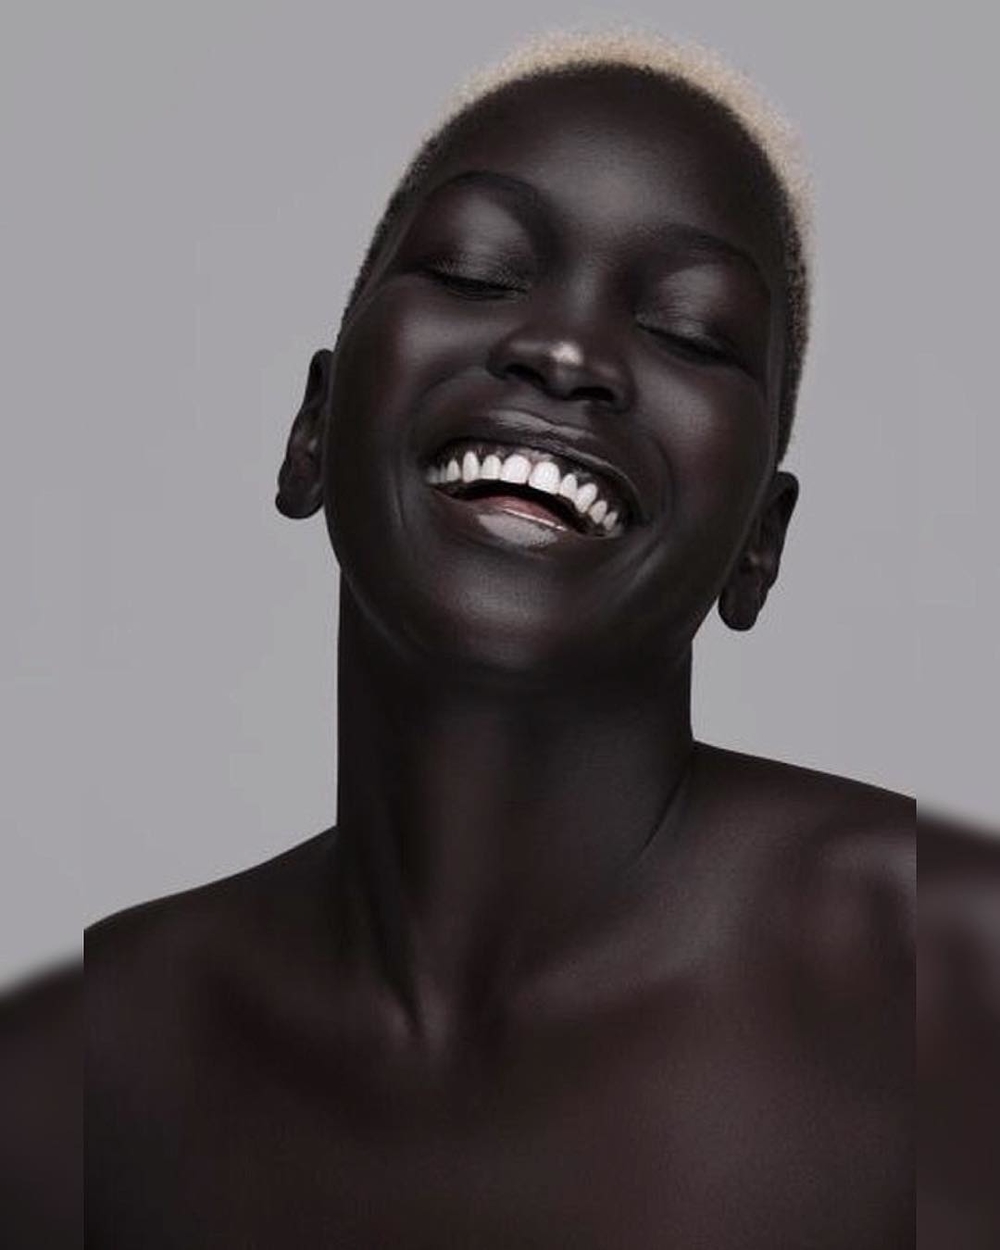 Làn da đen: Hãy khám phá nét đẹp đặc trưng của làn da đen ở bức hình này, sự mịn màng, đàn hồi, và rạng rỡ đến ngỡ ngàng. Bạn sẽ tìm thấy nhiều điều bất ngờ và thú vị.